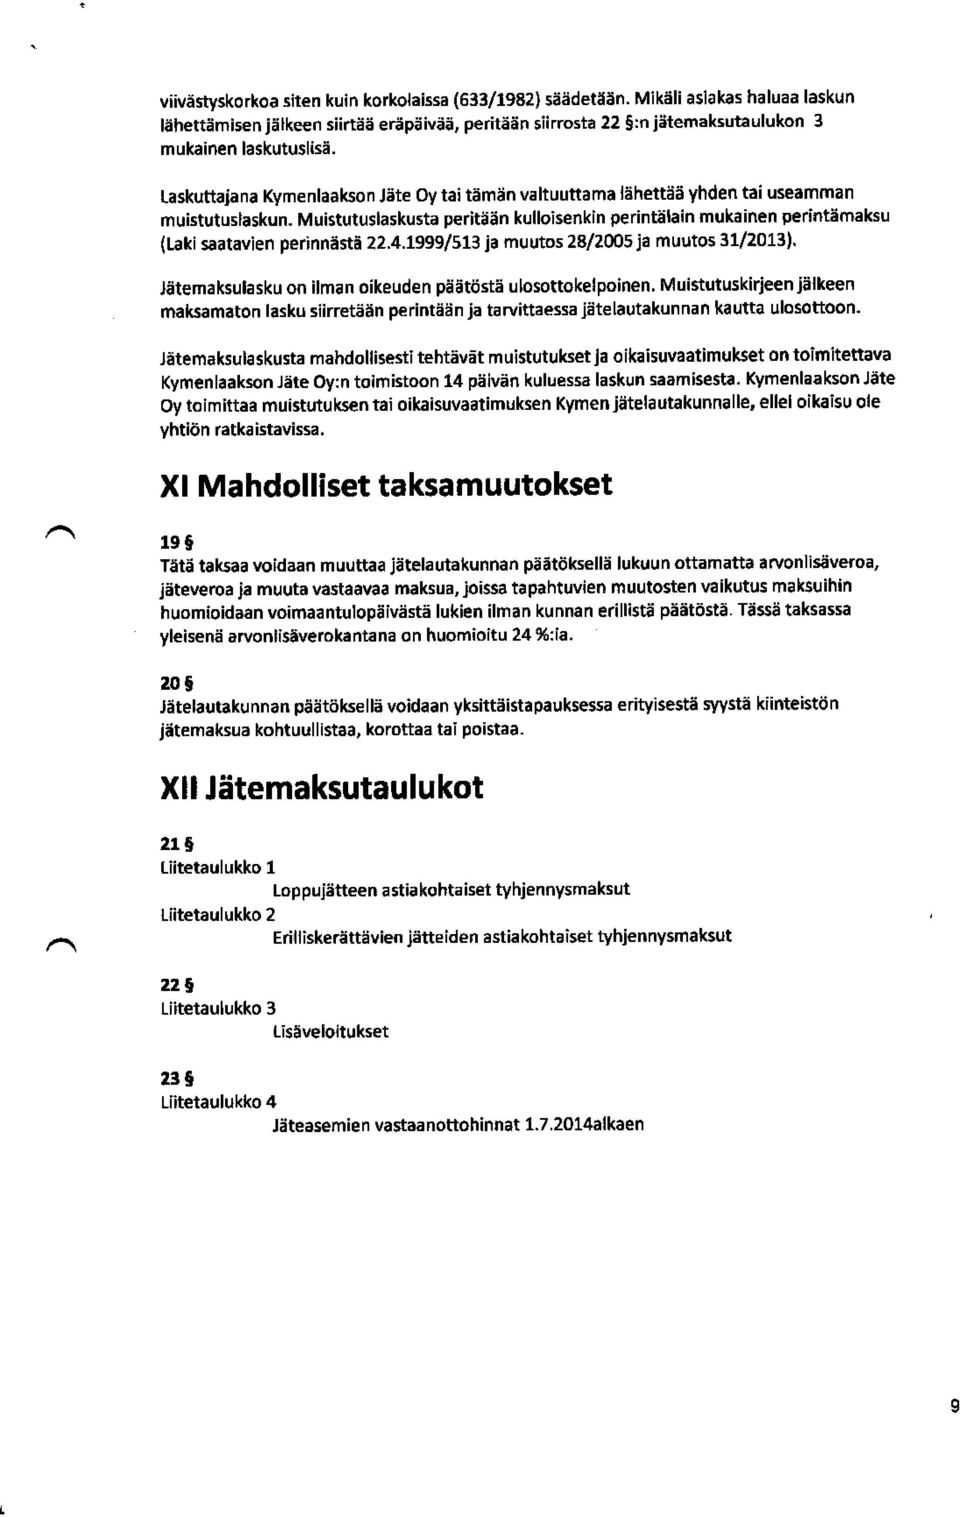 Muistutuslaskusta peritään kulloisenkin perintälain mukainen perintämaksu (Laki saatavien perinnästä 22.4.1999 / 513 ja muutos 28 / 2005ja muutos 31 / 2013).